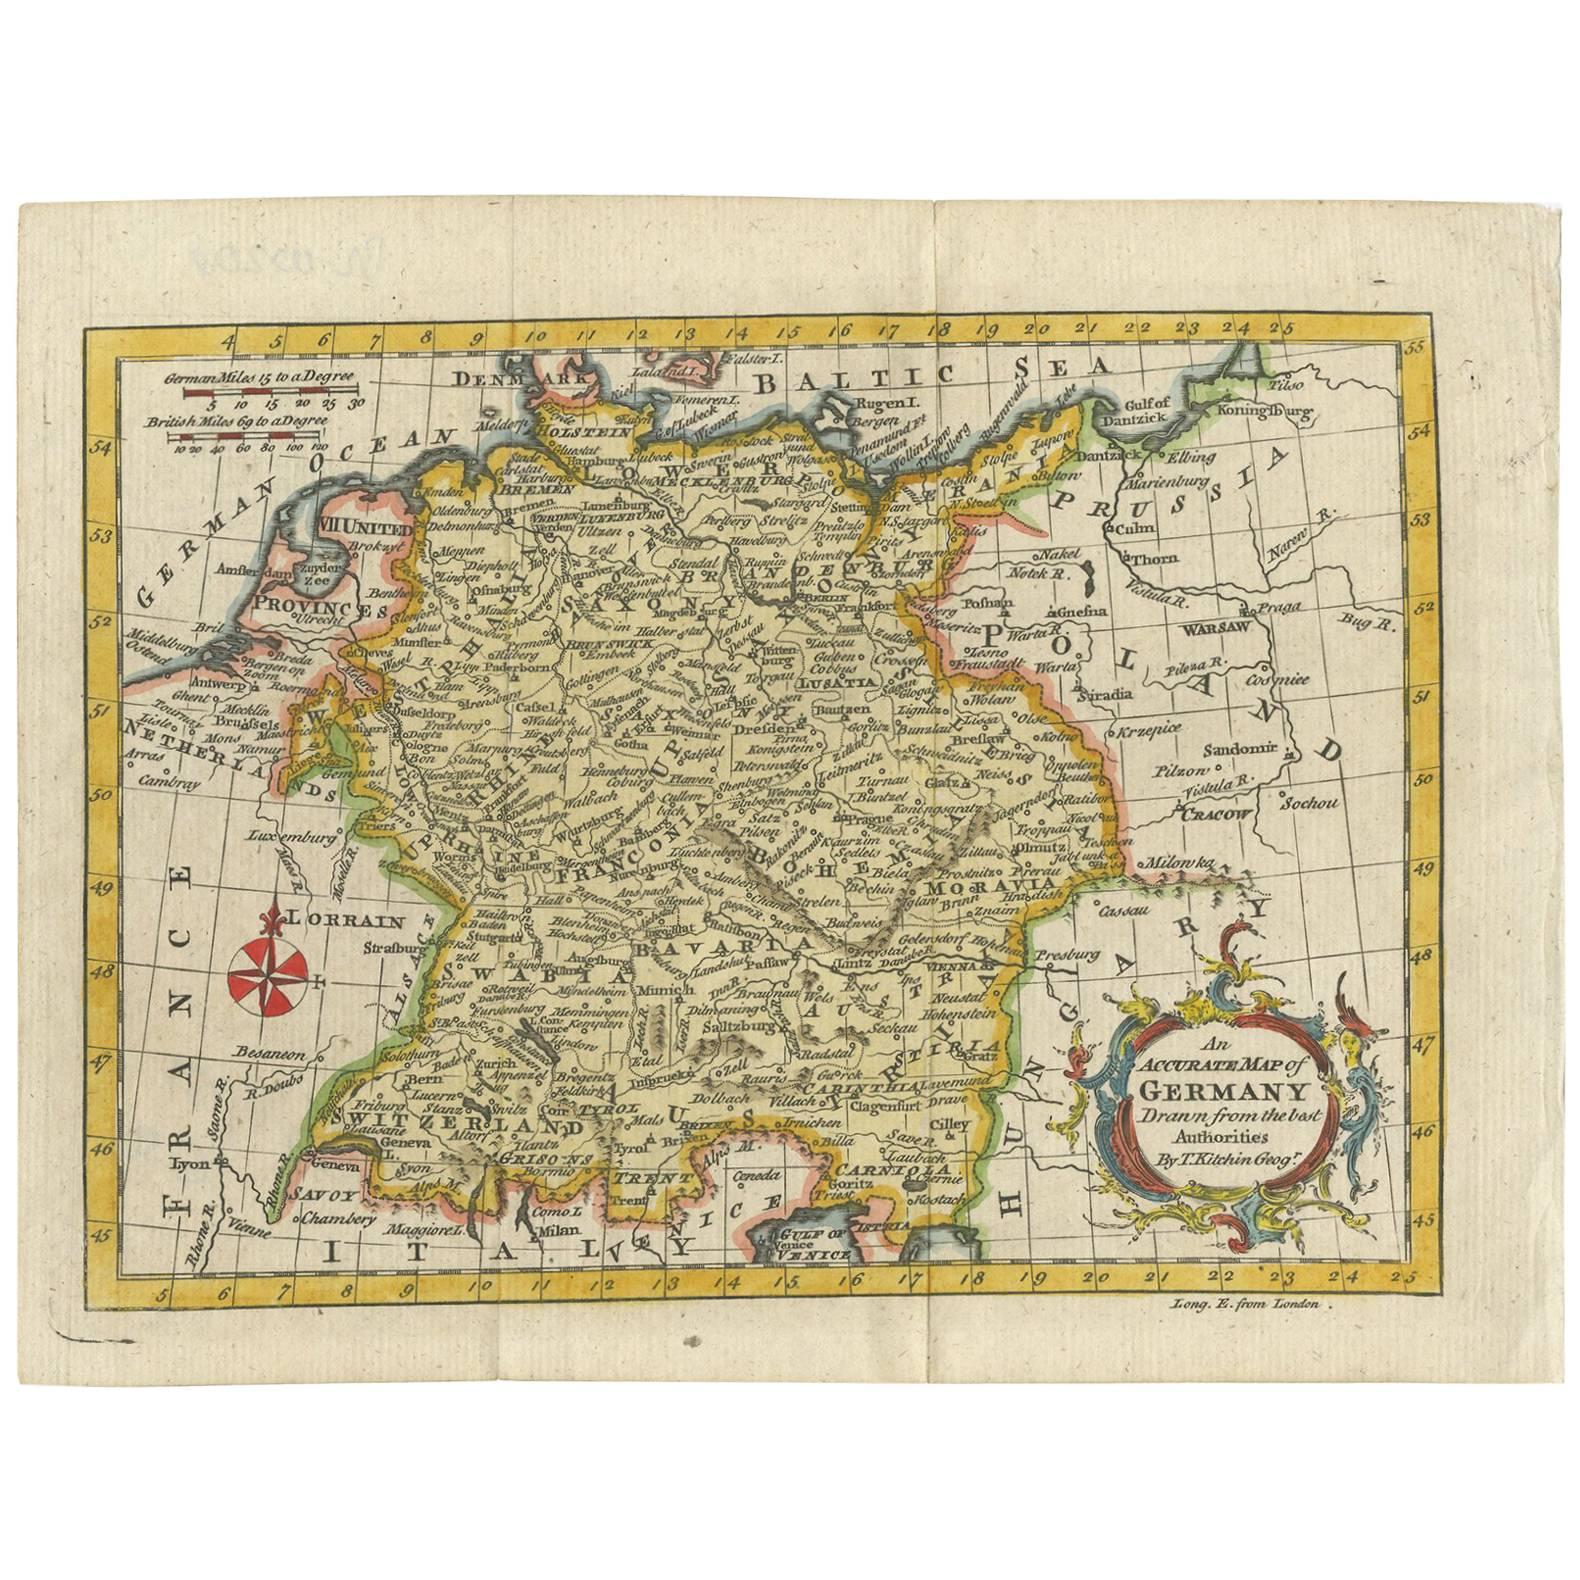 Carte ancienne d'Allemagne par T. Kitchin, datant d'environ 1770